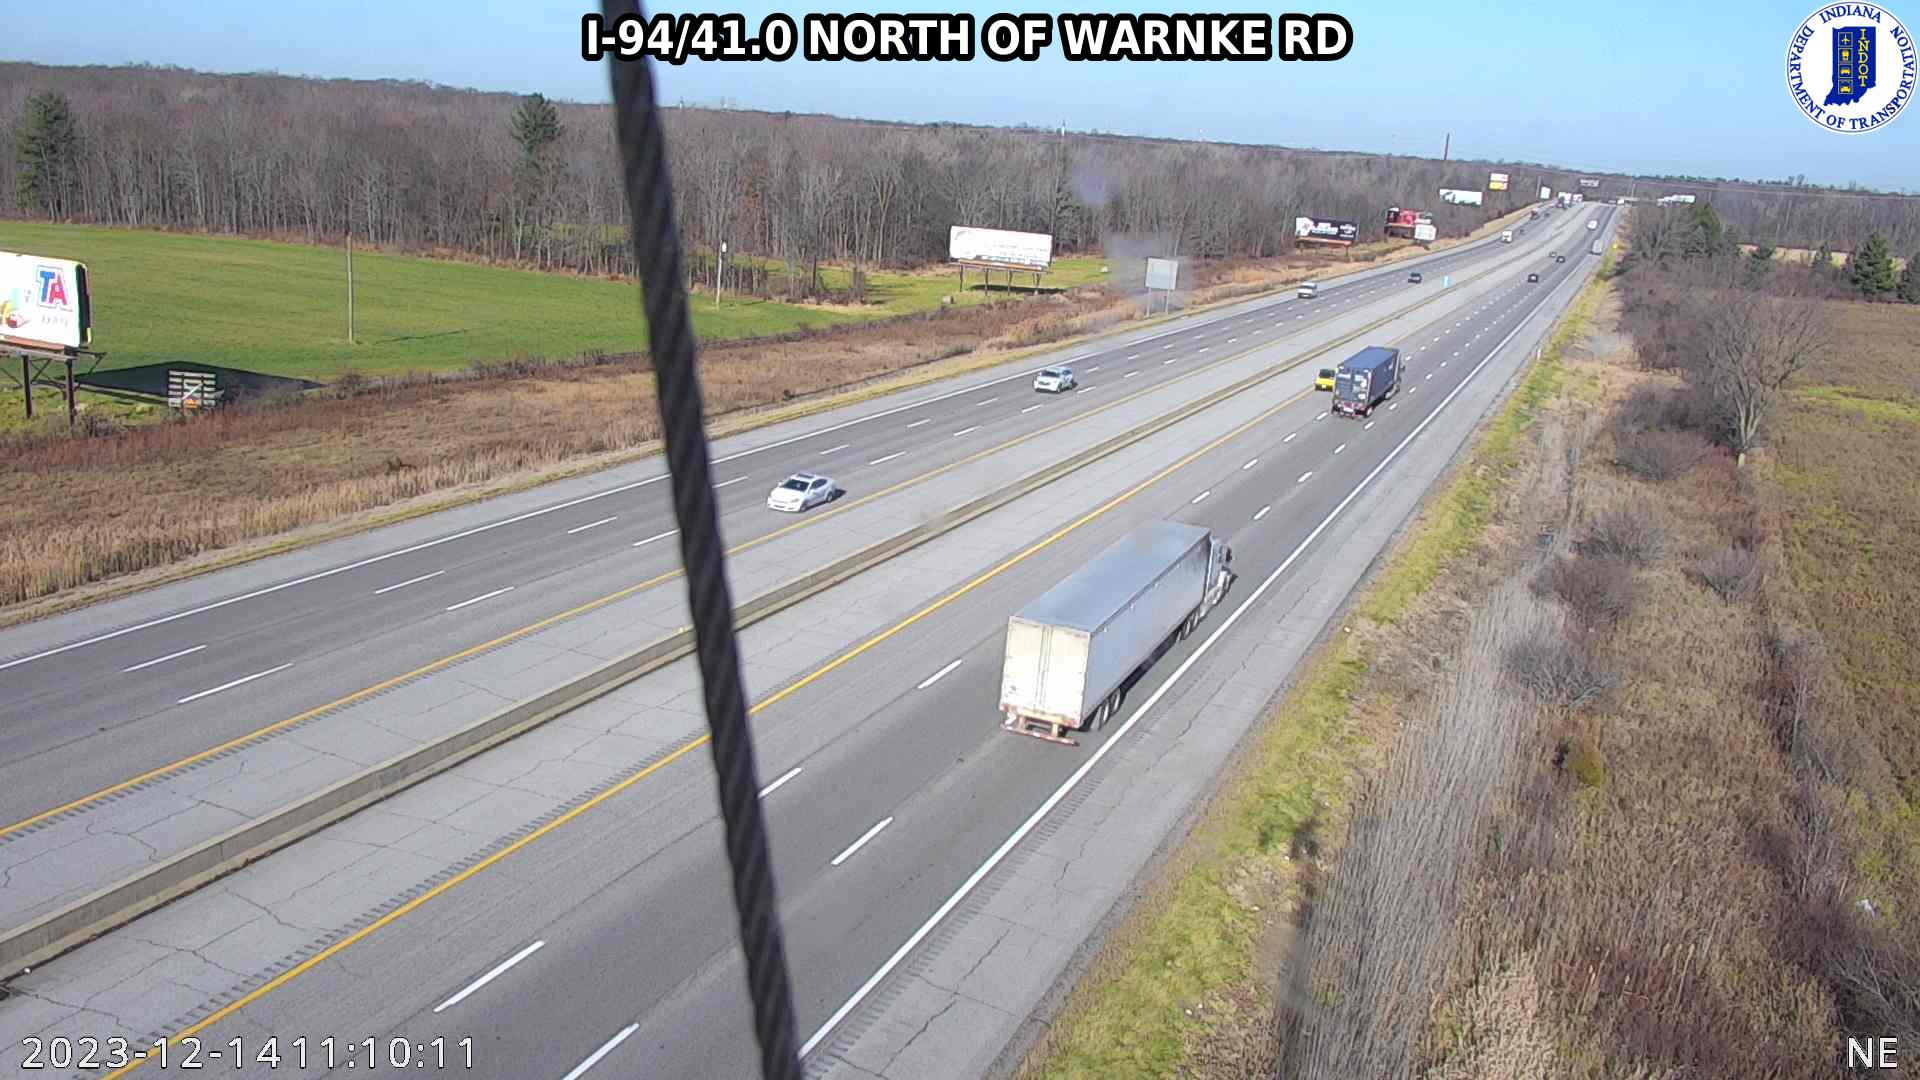 Ambler: I-94: I-94/41.0 NORTH OF WARNKE RD: I-94/41.0 NORTH OF WARNKE RD Traffic Camera